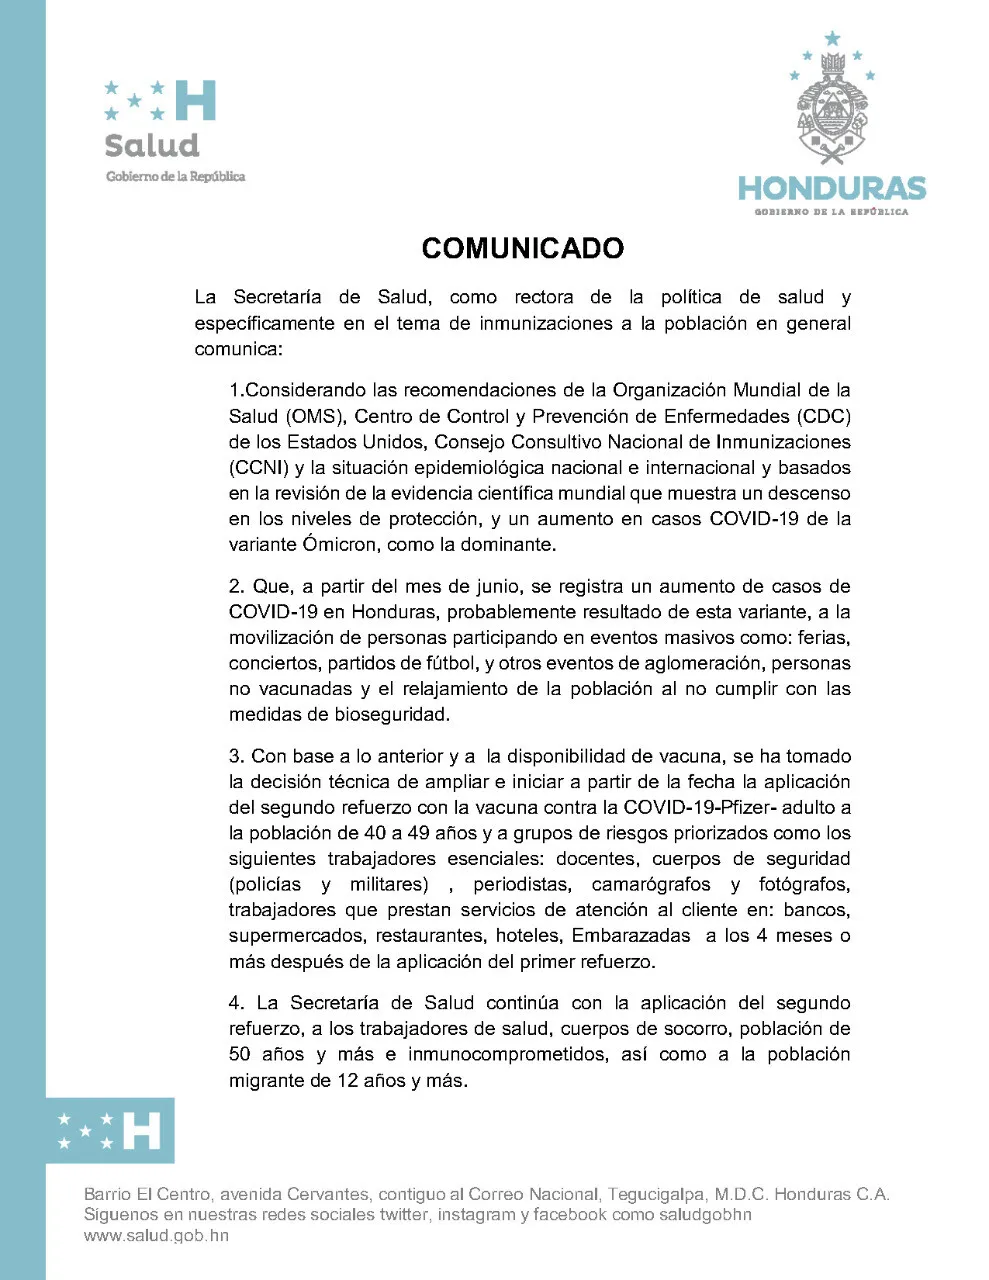 Ante el aumento de casos de COVID-19 en Honduras, SESAL aplicará 2da dosis de refuerzo a la población de 40 a 49 años y a grupos de riesgo priorizados